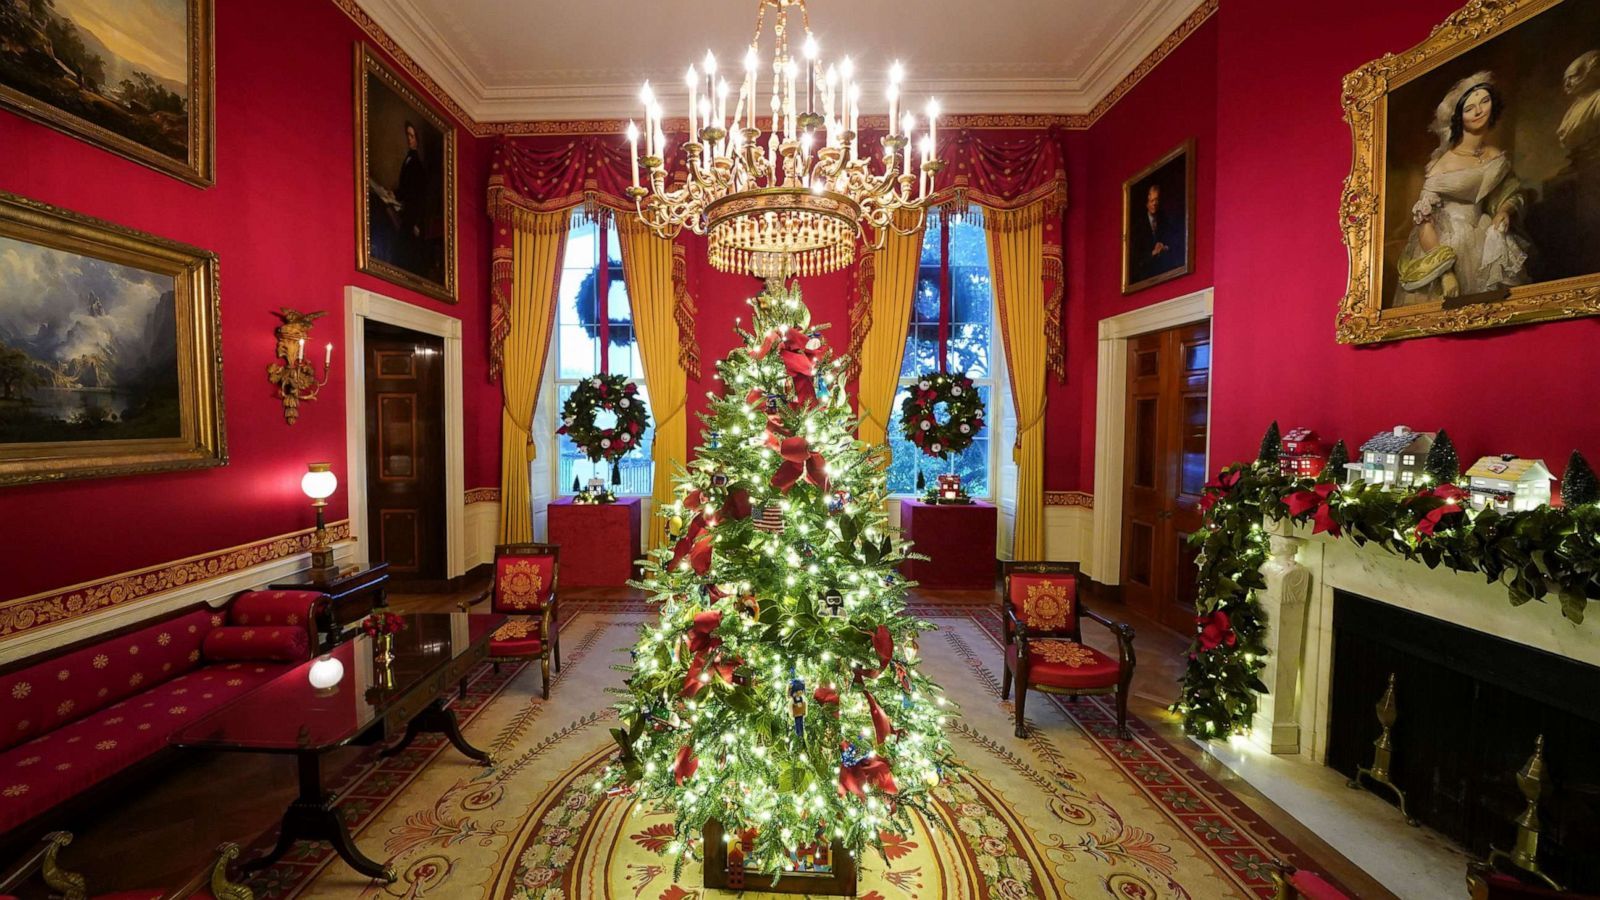 Photos: White House 2020 Christmas decorations revealed